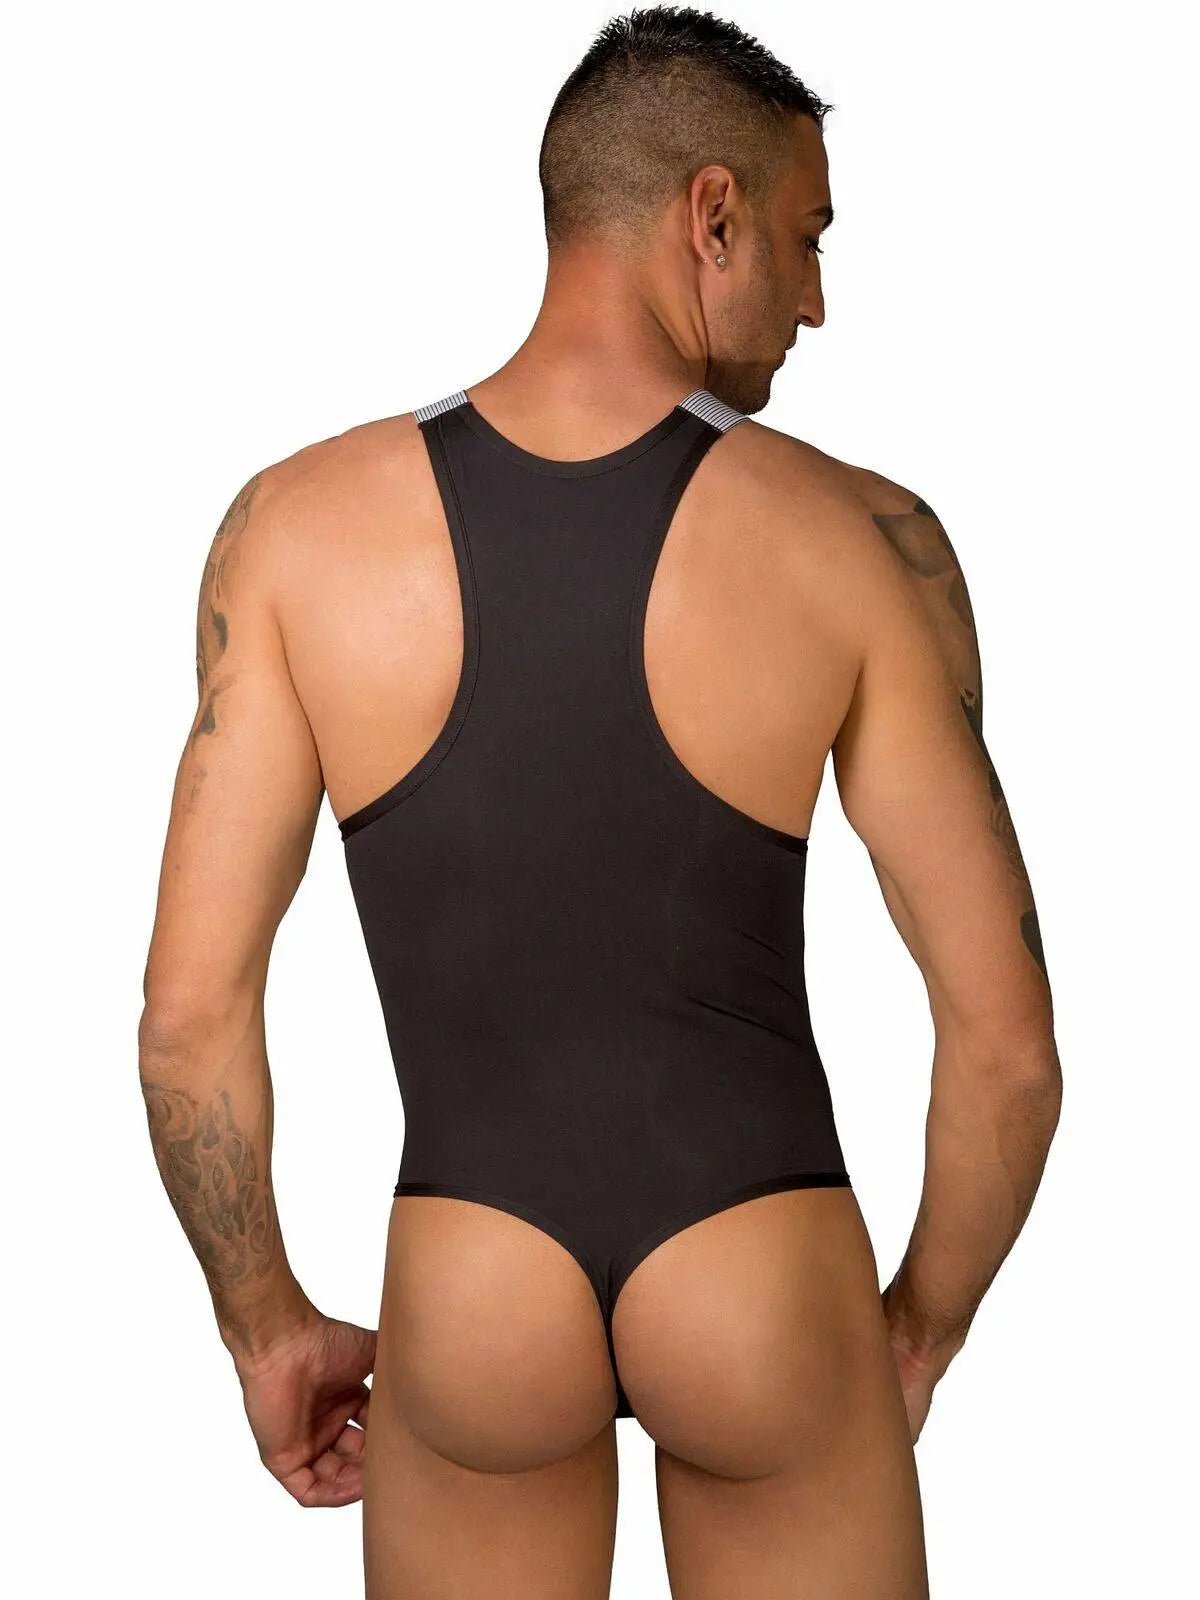 EROS VENEZIANI - Herren Body Bodysuit Overall Stretch Einteiler Singlet - noodosz